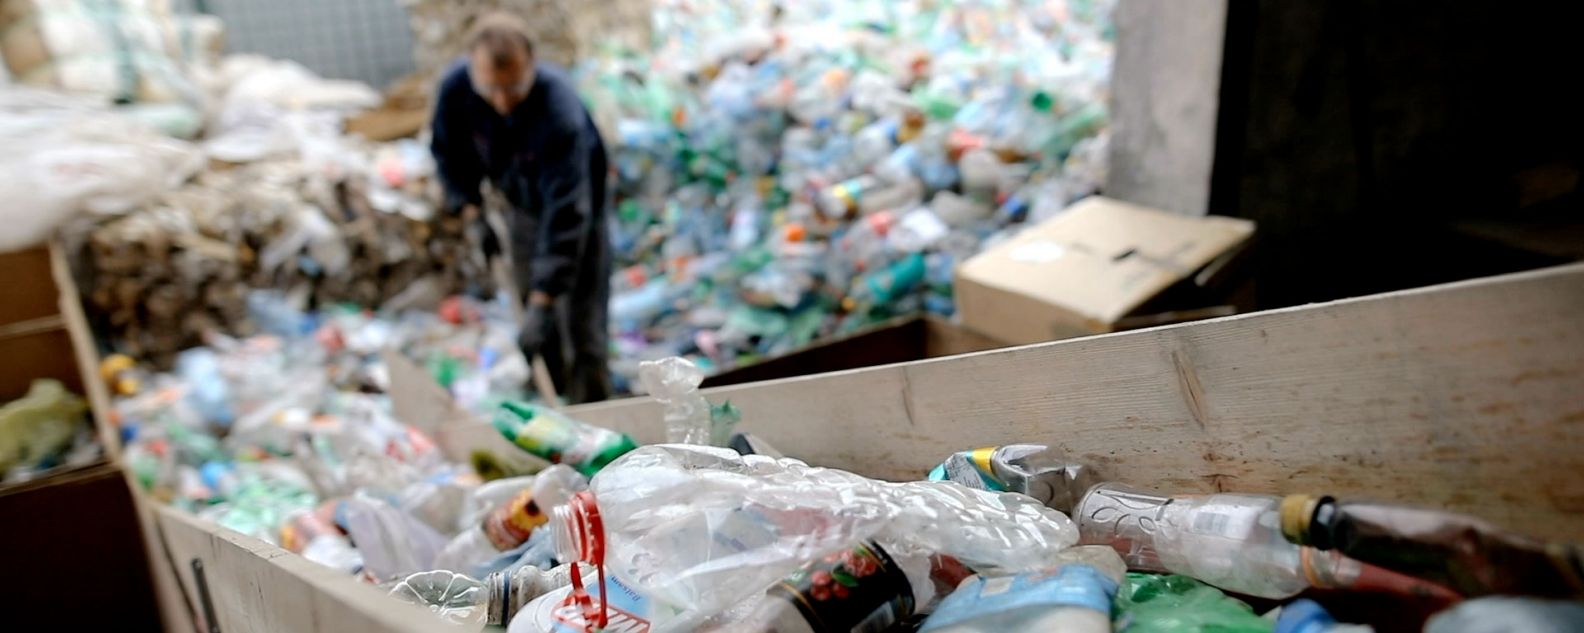 リサイクル工場でペットボトルをシャベルで押してリサイクルする作業員